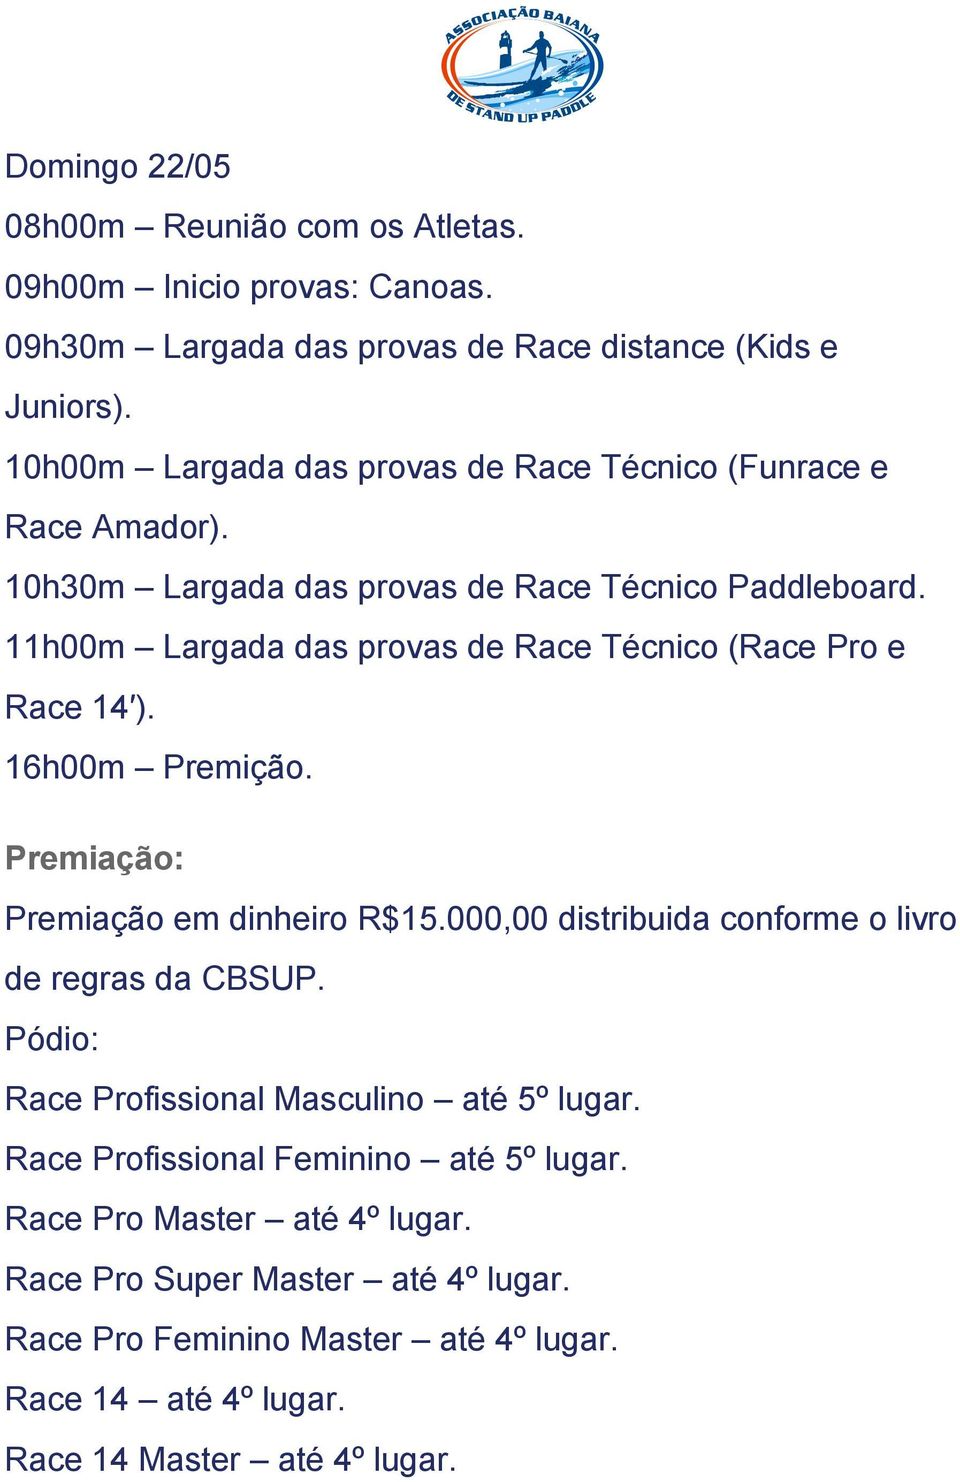 11h00m Largada das provas de Race Técnico (Race Pro e Race 14 ). 16h00m Premição. Premiação: Premiação em dinheiro R$15.